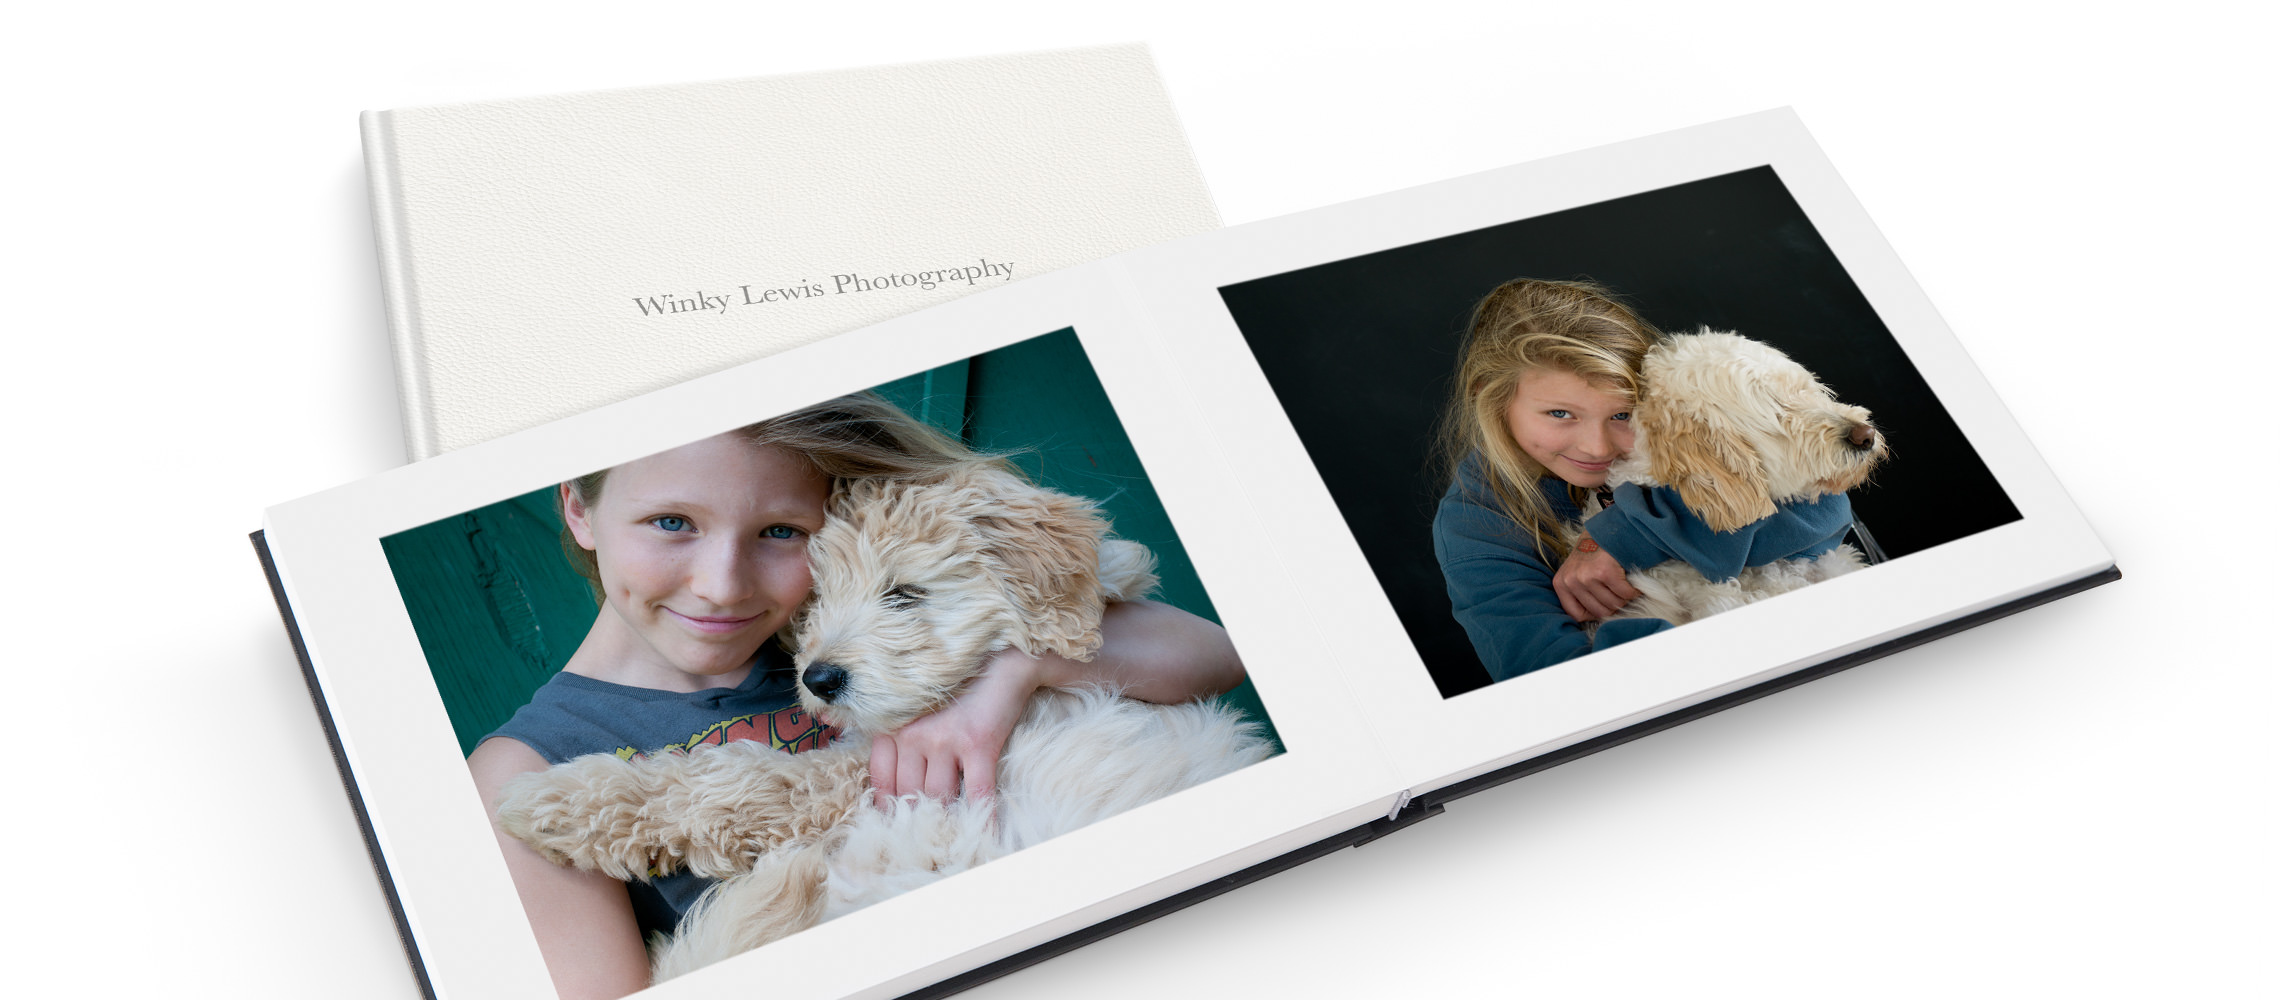 Livro de fotos aberto com fotos de criança e cachorro.